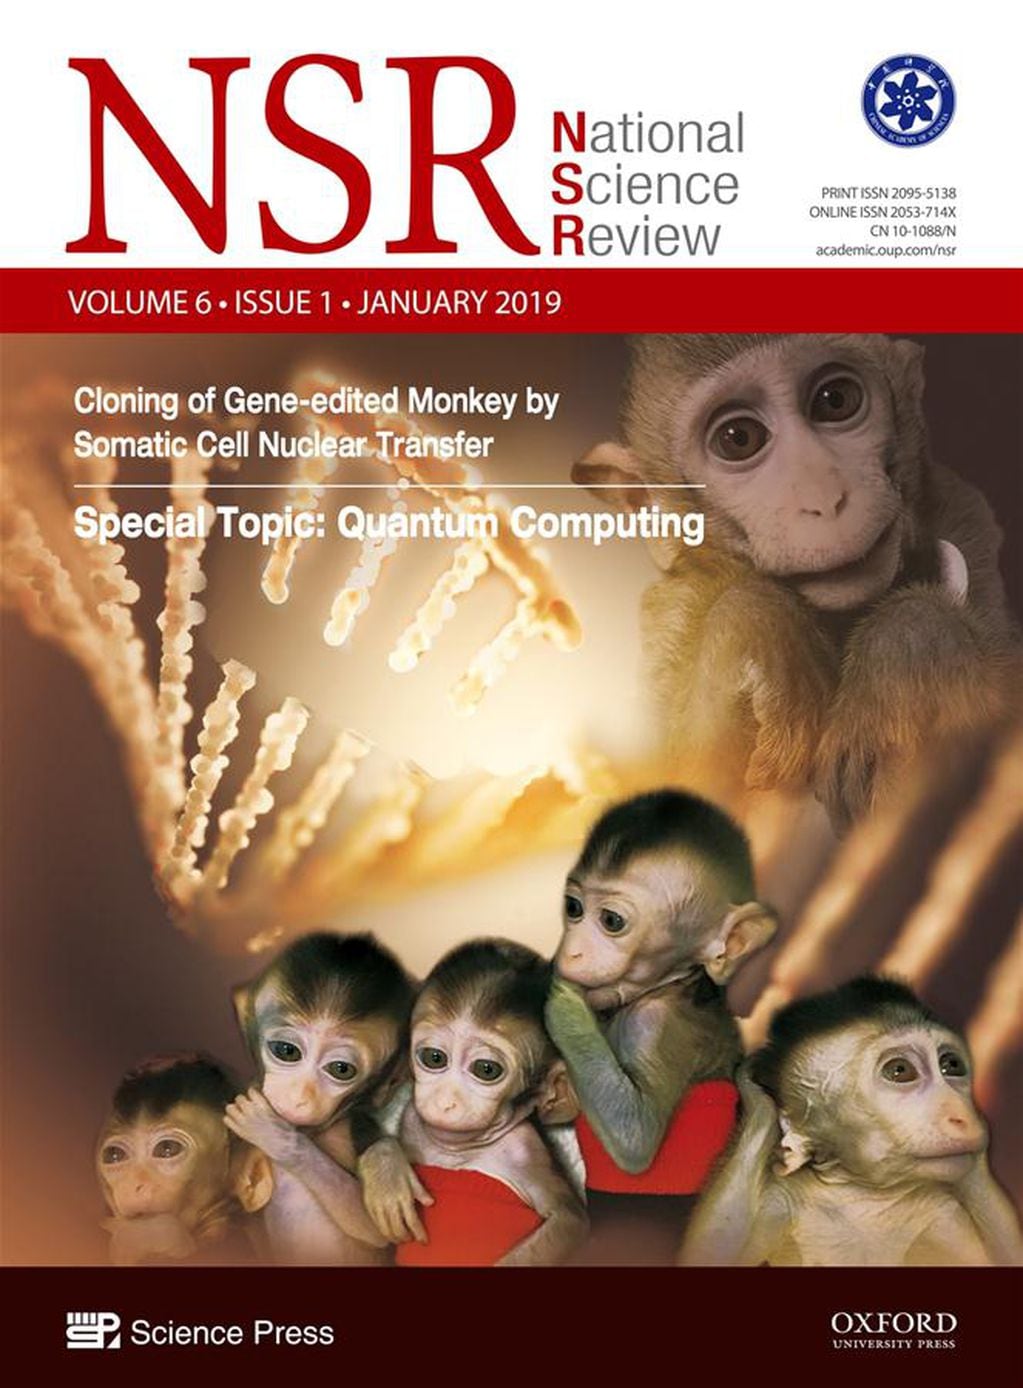 El primer anuncio en este sentido del Instituto de Neurociencia de la Academia China de Ciencias fue cuando se clonaron cinco monos de un macaco editado genéticamente en 2019